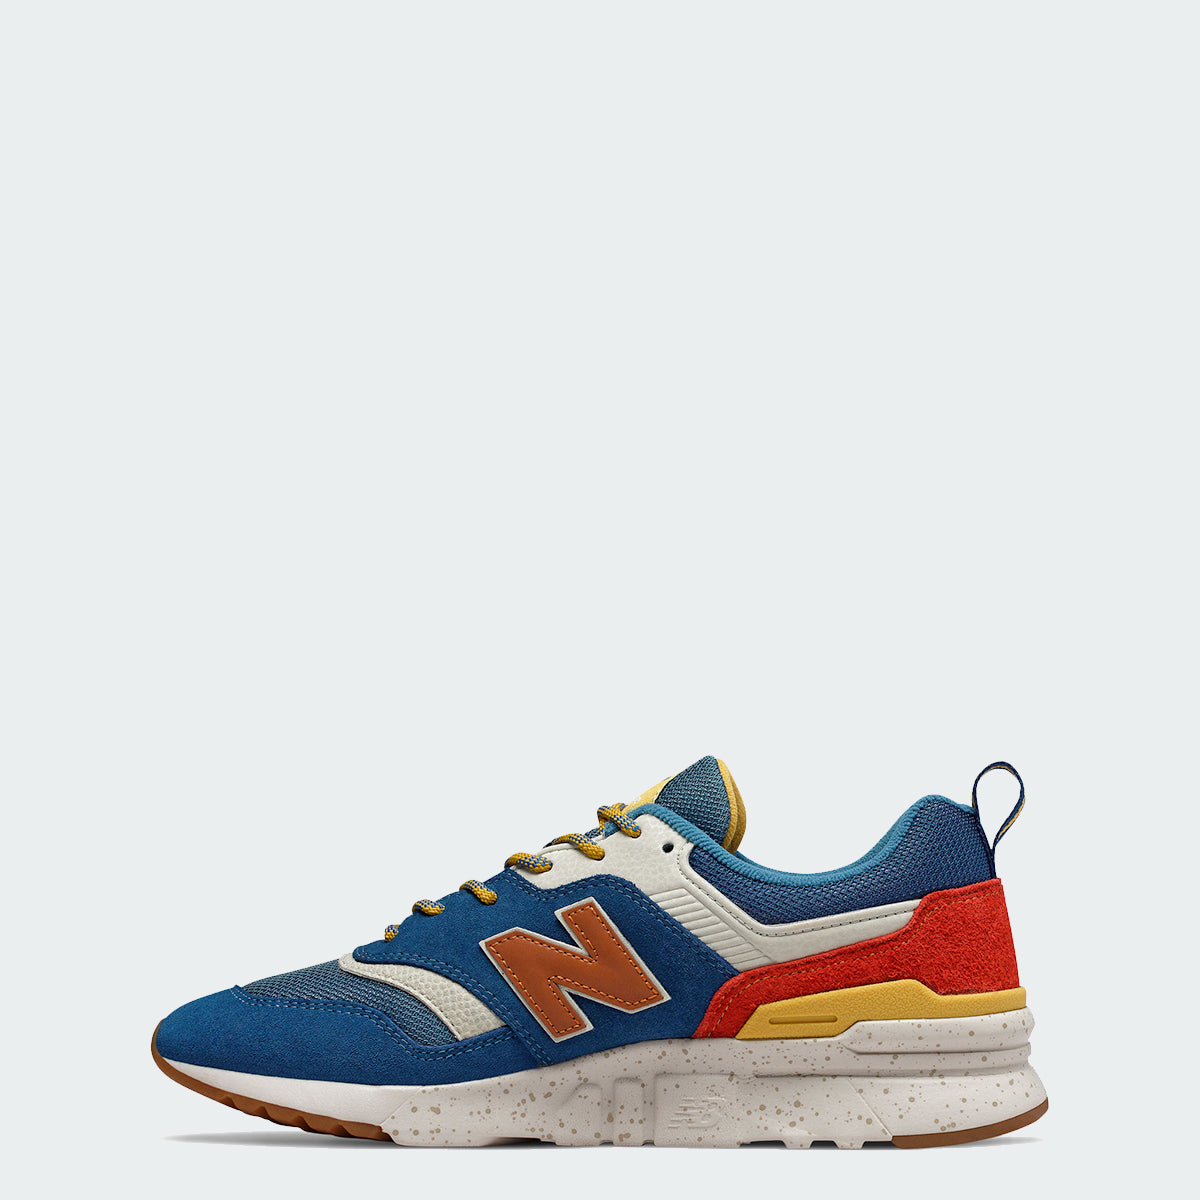 New Balance 997H Shoes Blue Orange 